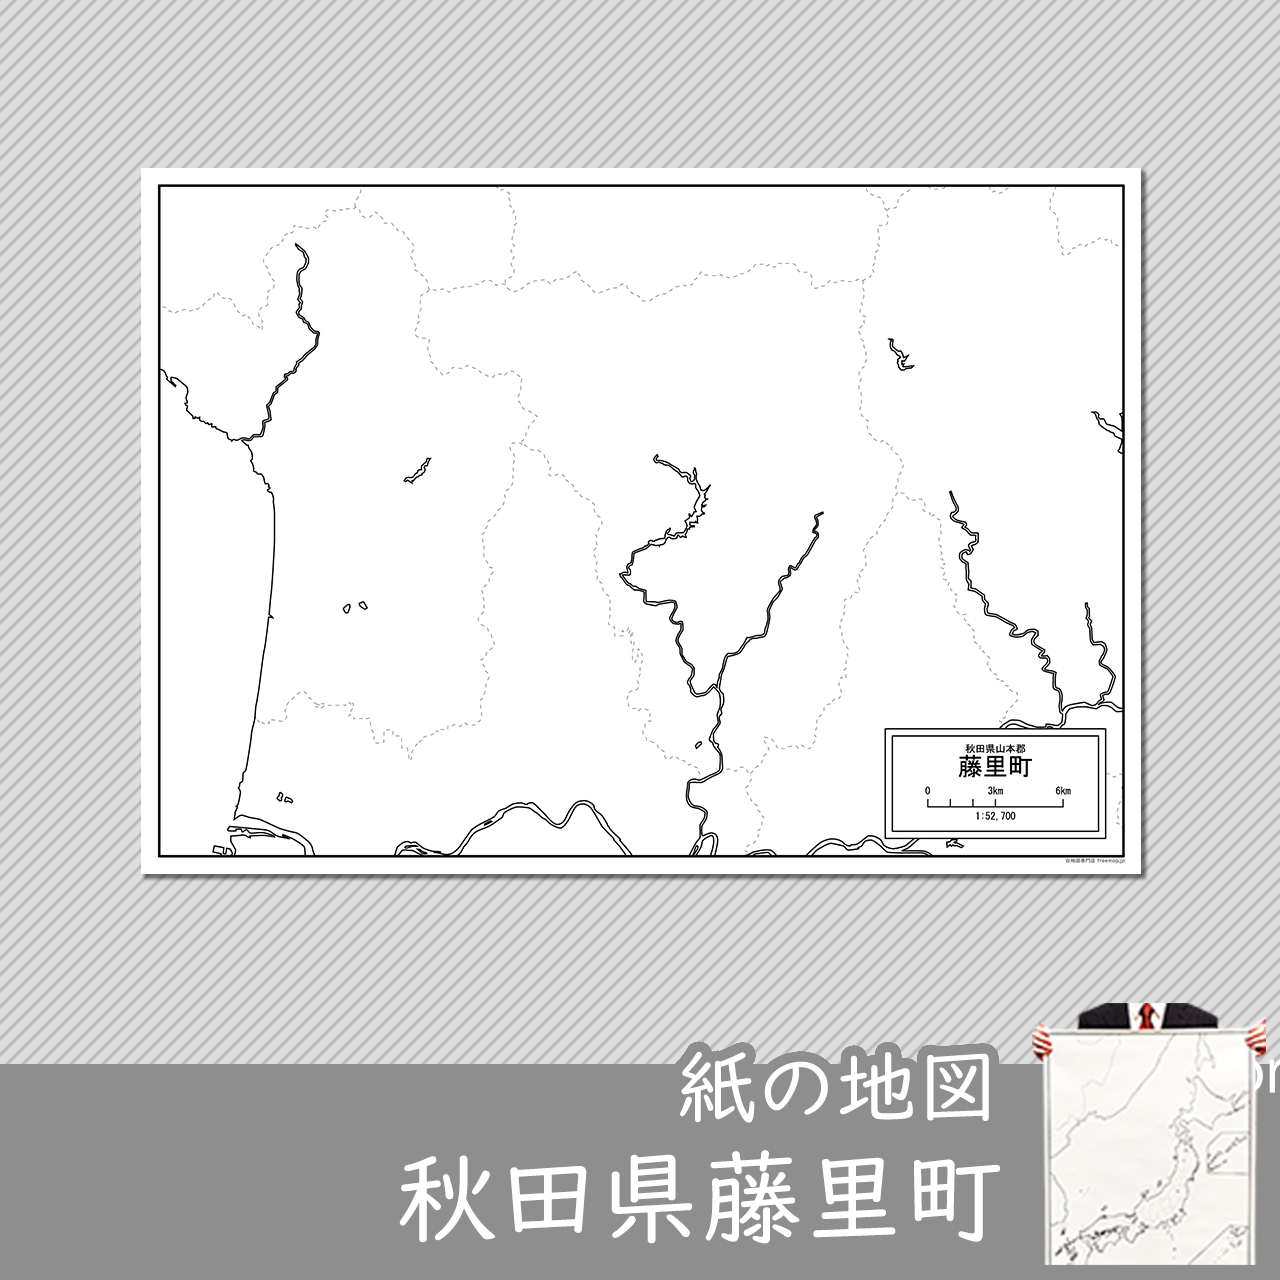 藤里町の紙の白地図のサムネイル